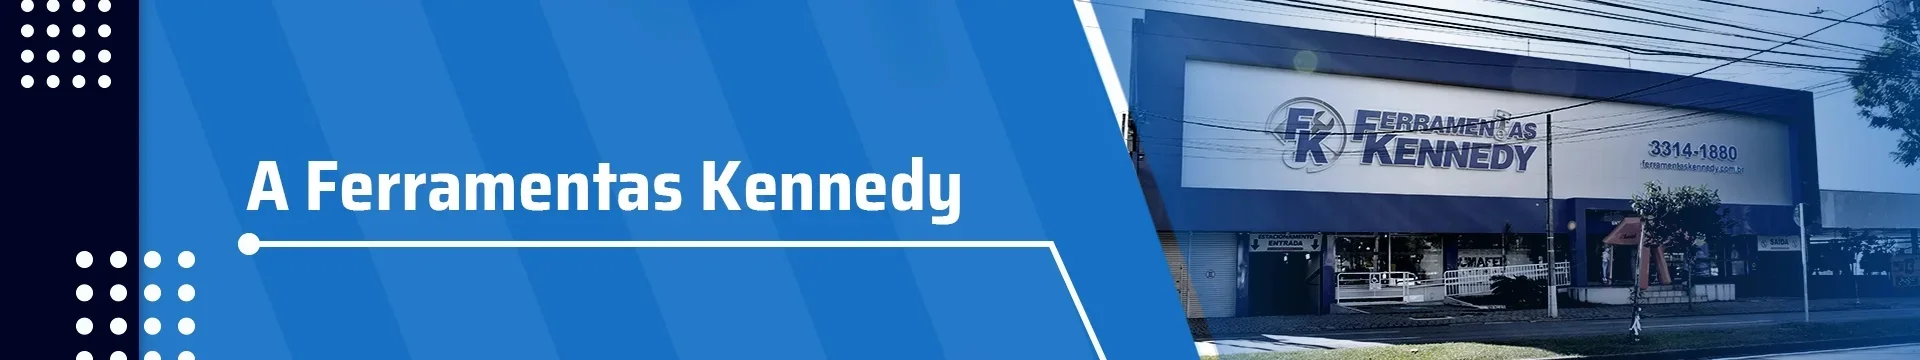 Ferramentas Kennedy entre os maiores E-commerce do país